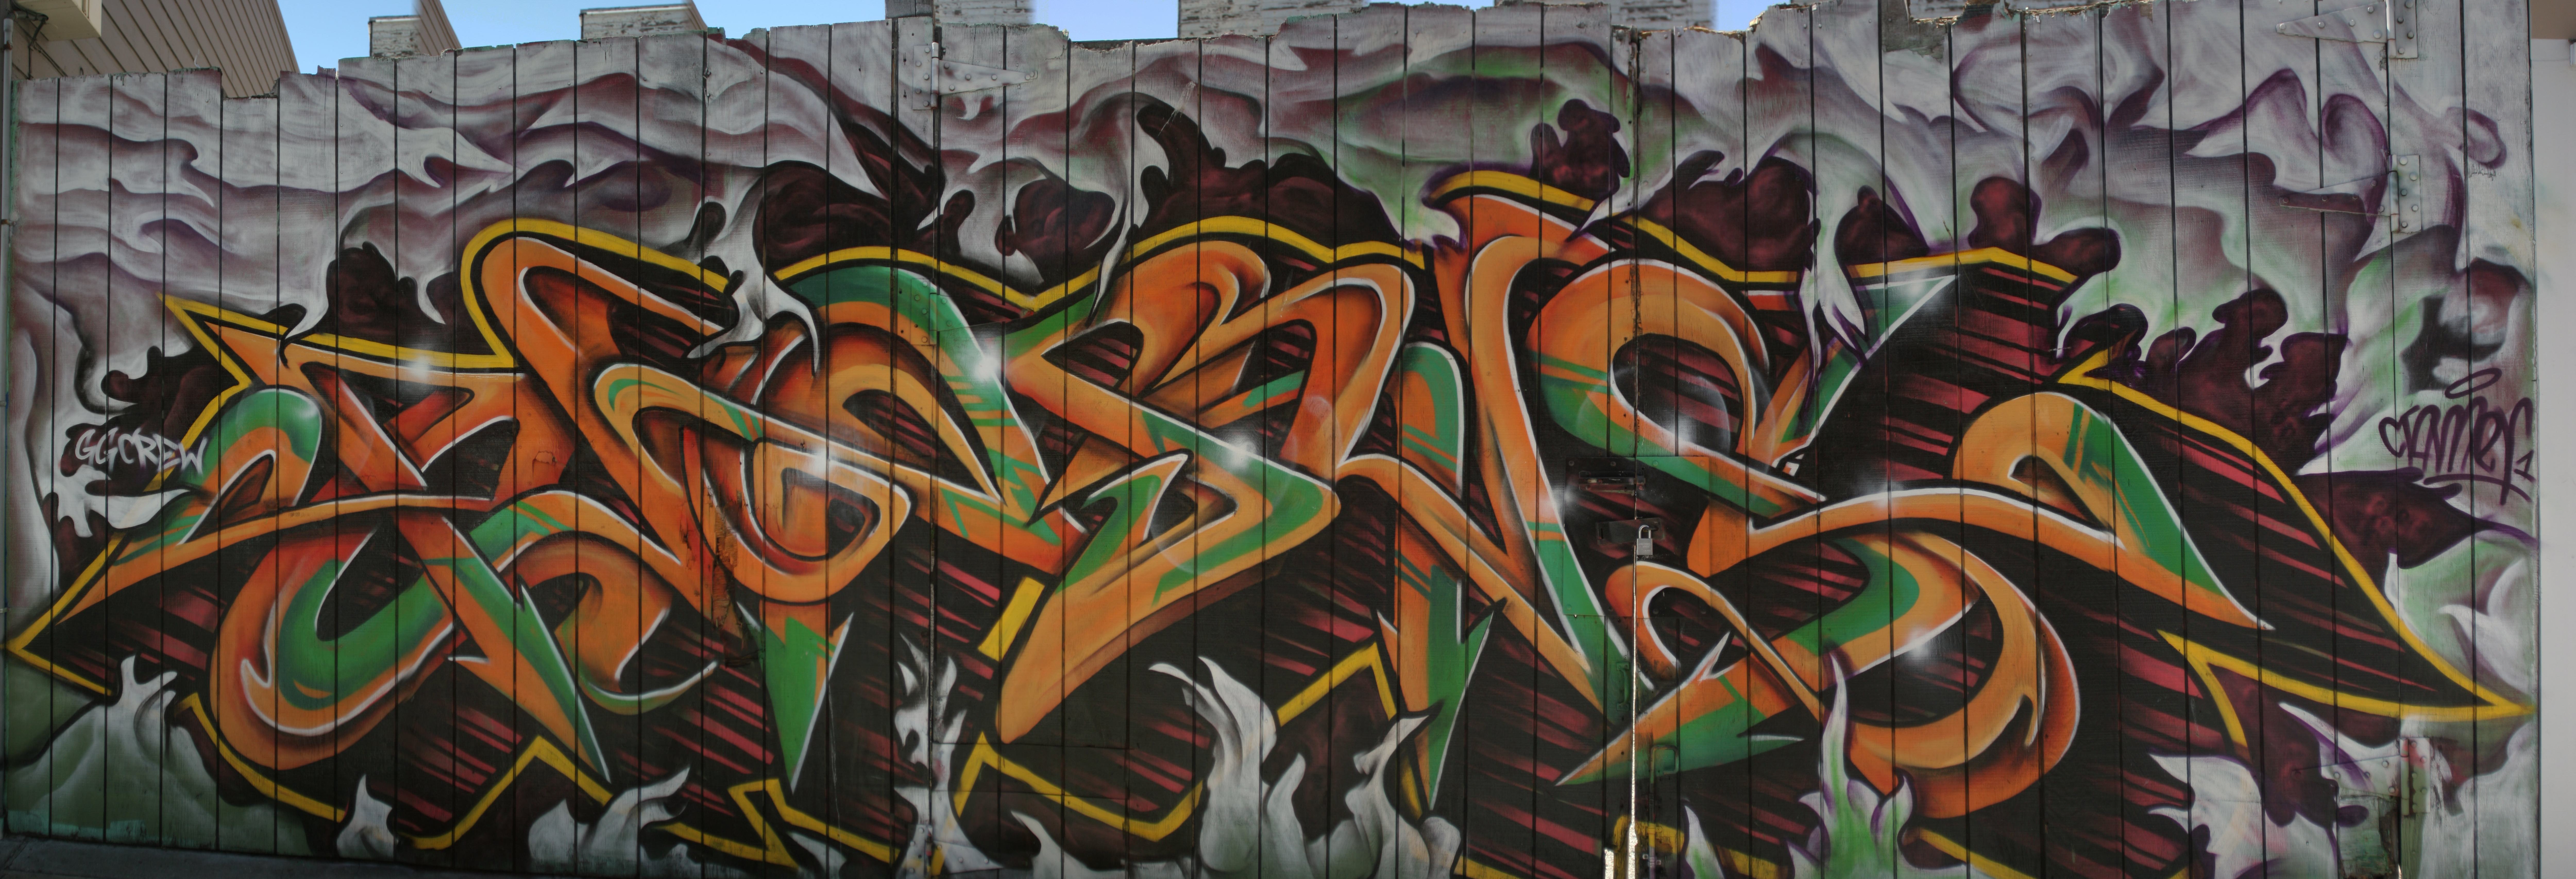 Graffitti Pano SF 001.jpg